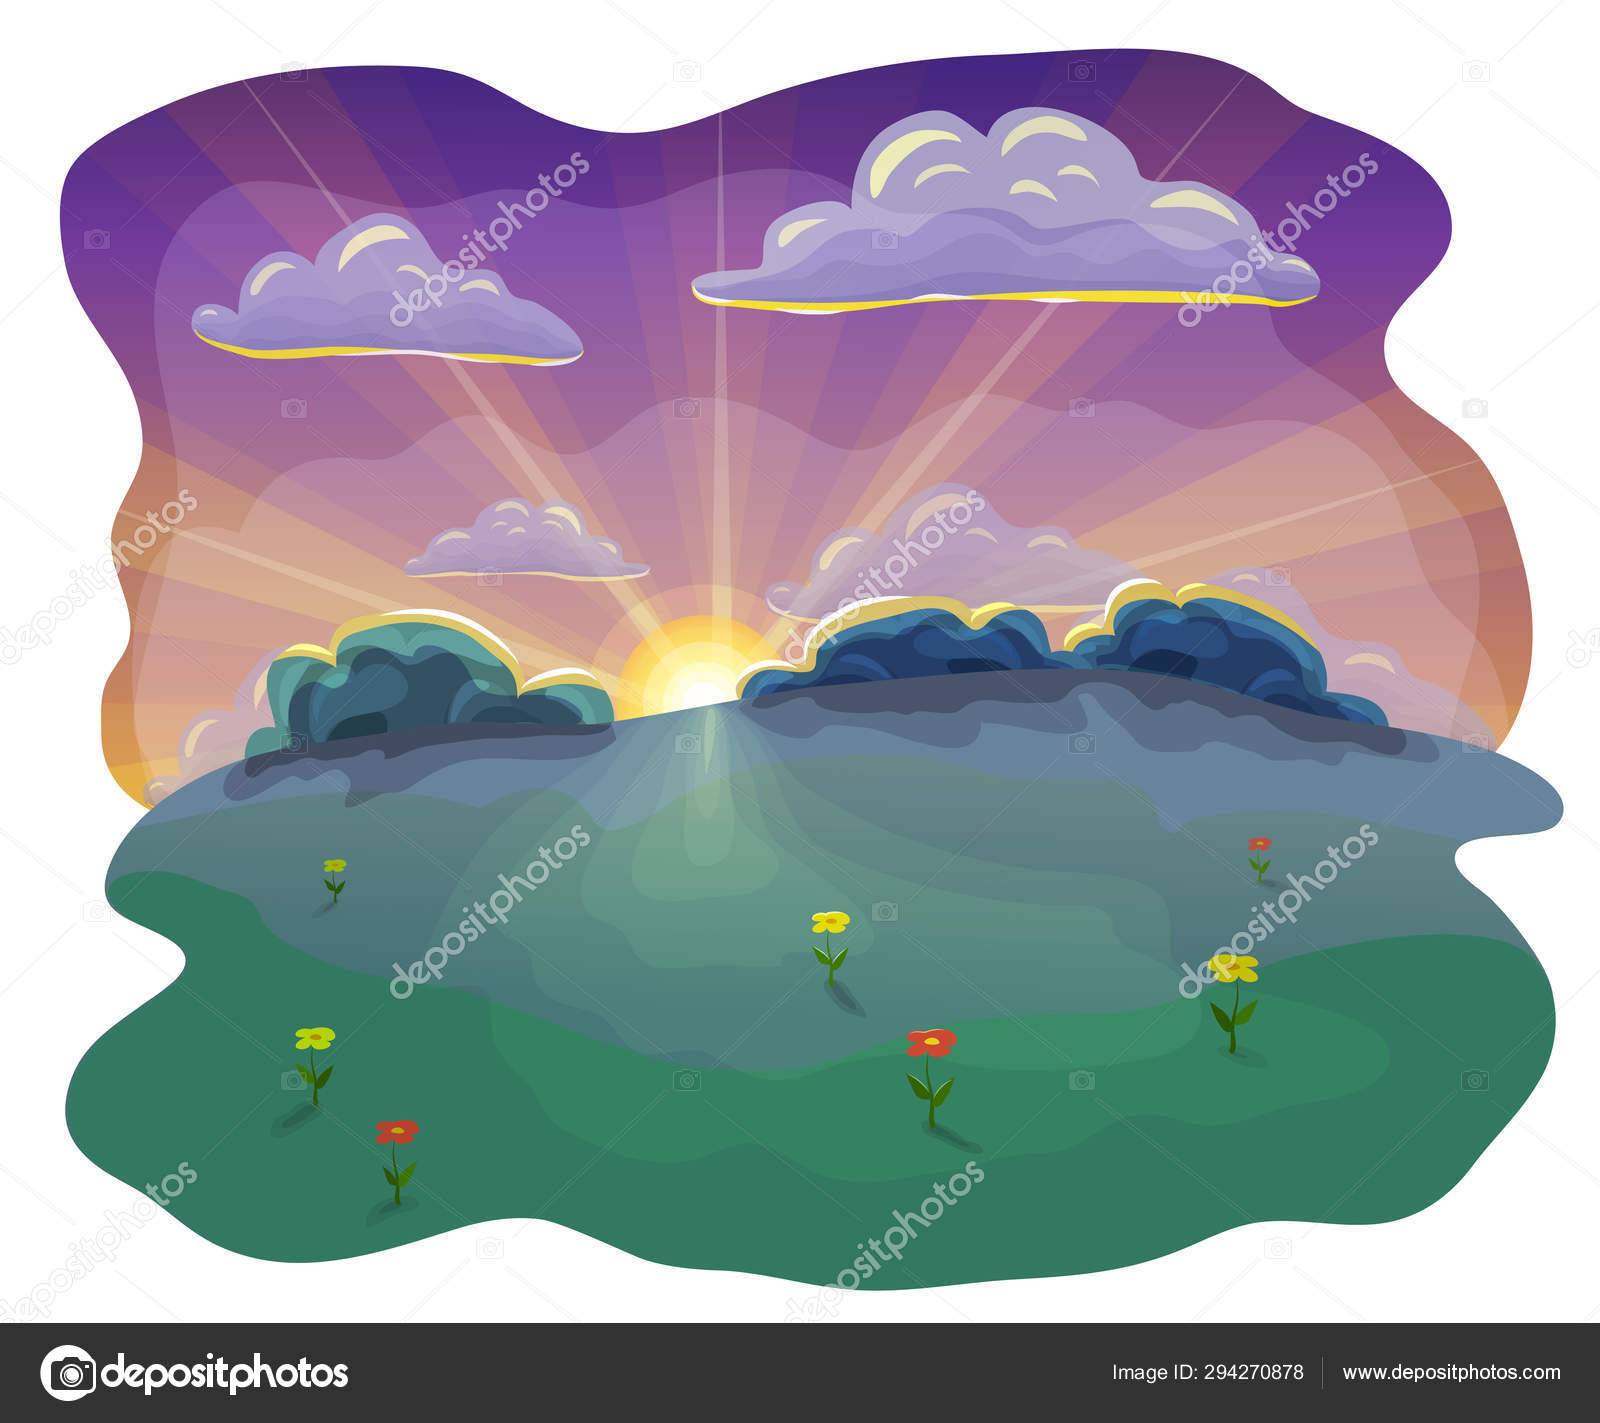 イラスト素材　KaLenka8　日没時の漫画や平らな夜景の背景。美しい夕日の空と雲、緑の丘、木や花と自然の夕日のシーン。夏の屋外夕日の夕日のイラスト.　©　#294270878